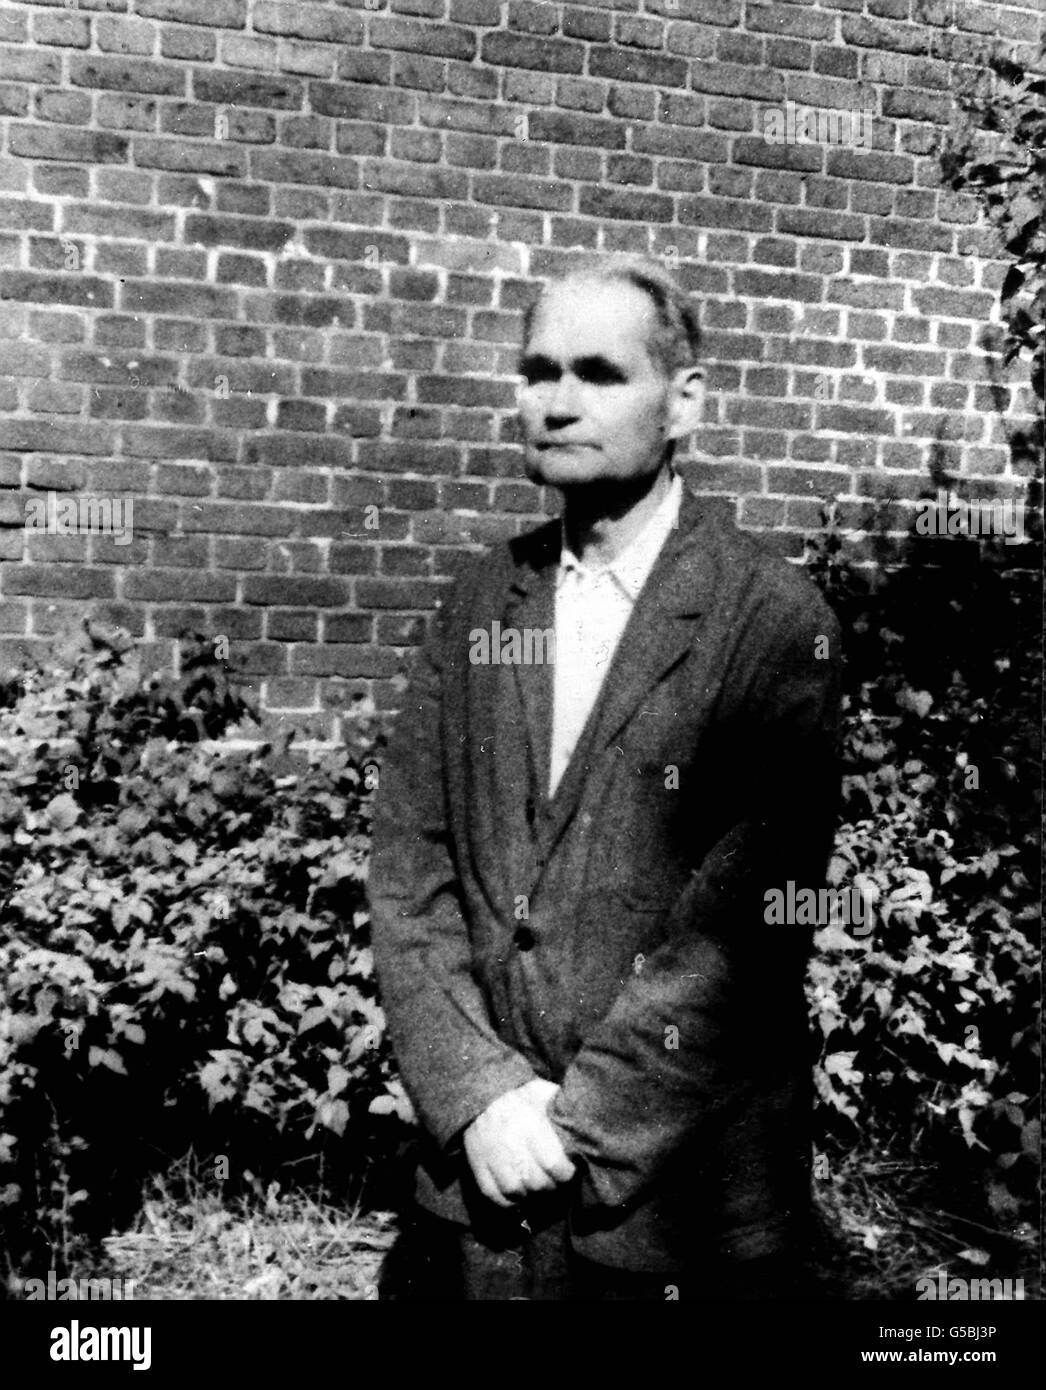 RUDOLF HESS 1982: L'ex vice di Adolf Hitler, Rudolf Hess, nel giardino della prigione di Spandau, Berlino. Hess fu condannato a vita dopo essere stato condannato per crimini di guerra ai processi di Norimberga nel 1946. Morì nell'agosto 1987 all'età di 93 anni. Foto Stock